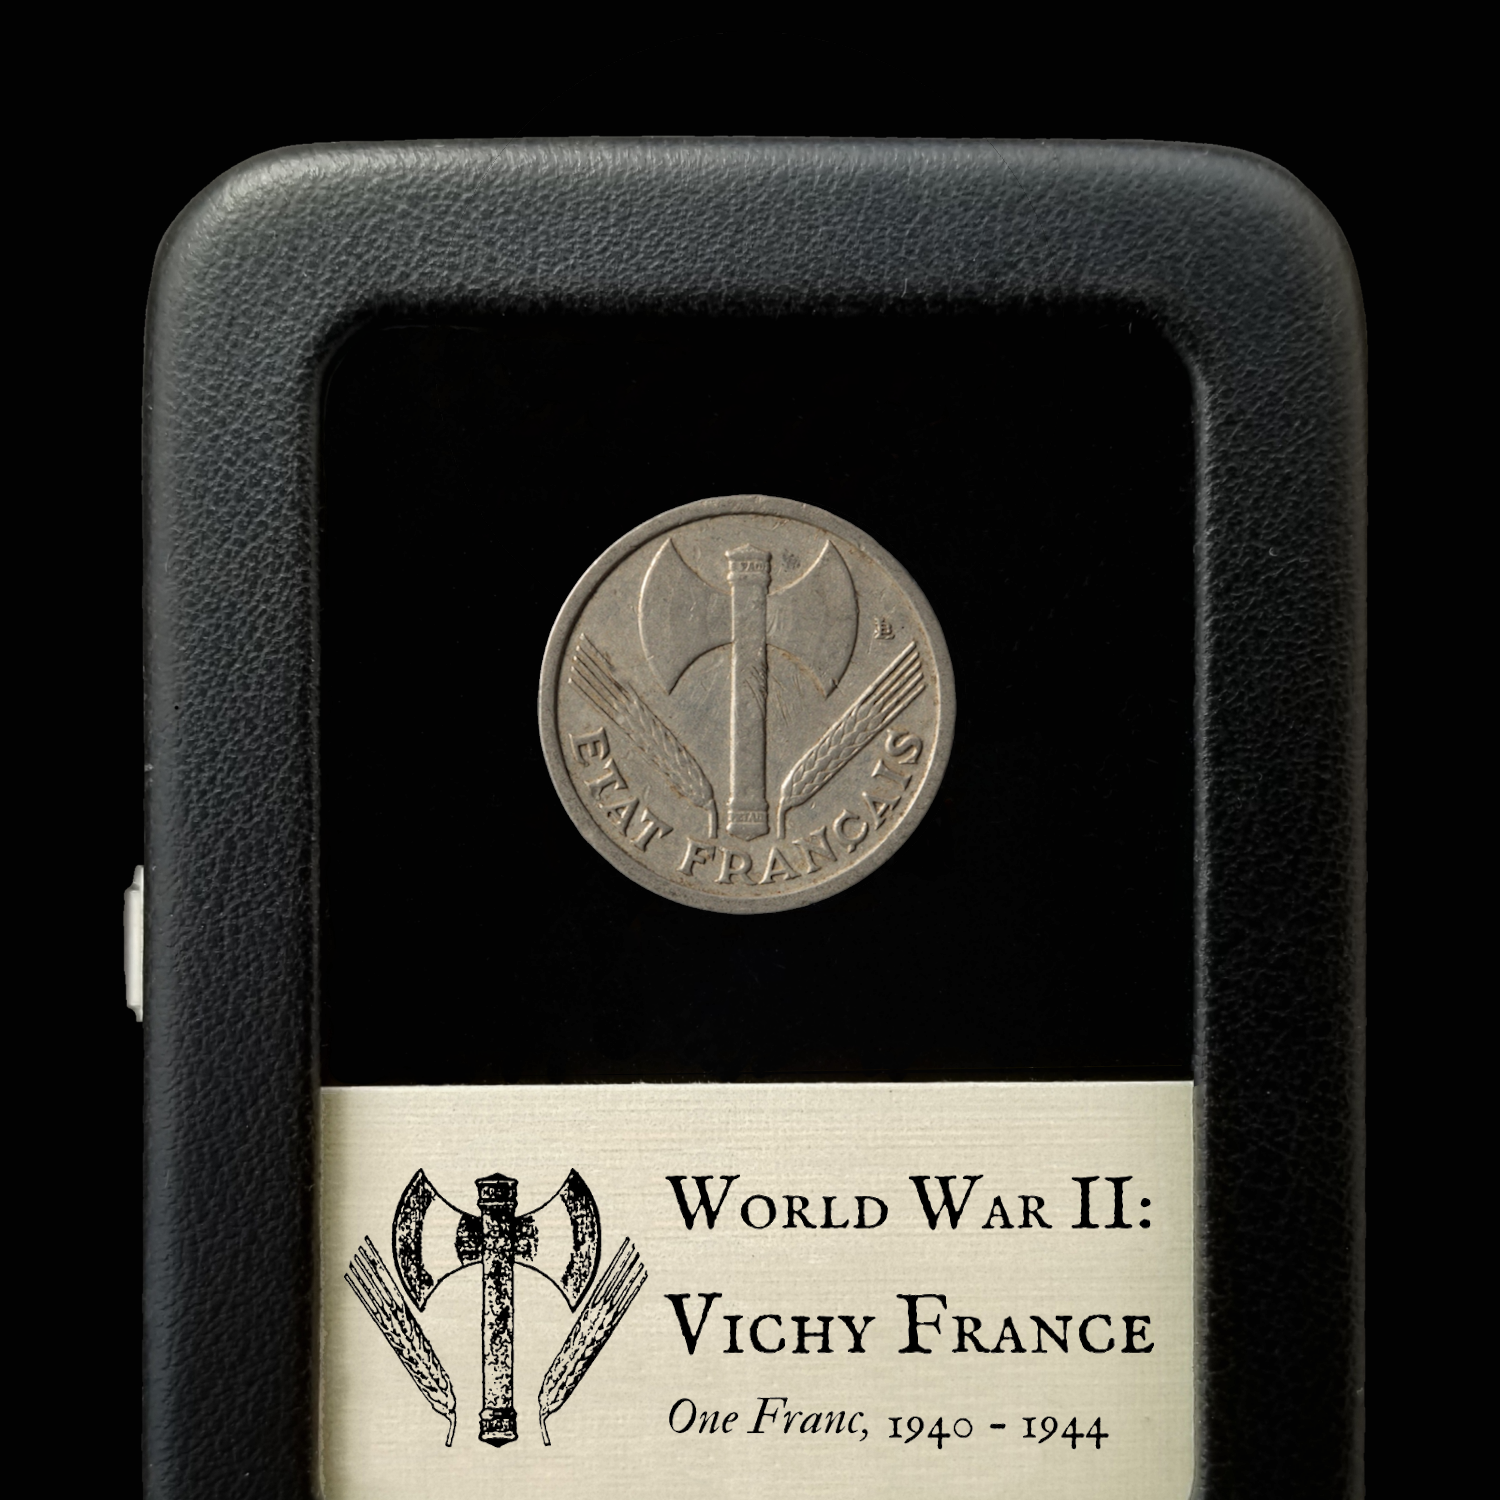 Vichy France, 1 Franc, WWII German Occupation - 1940 to 1944 - World War II